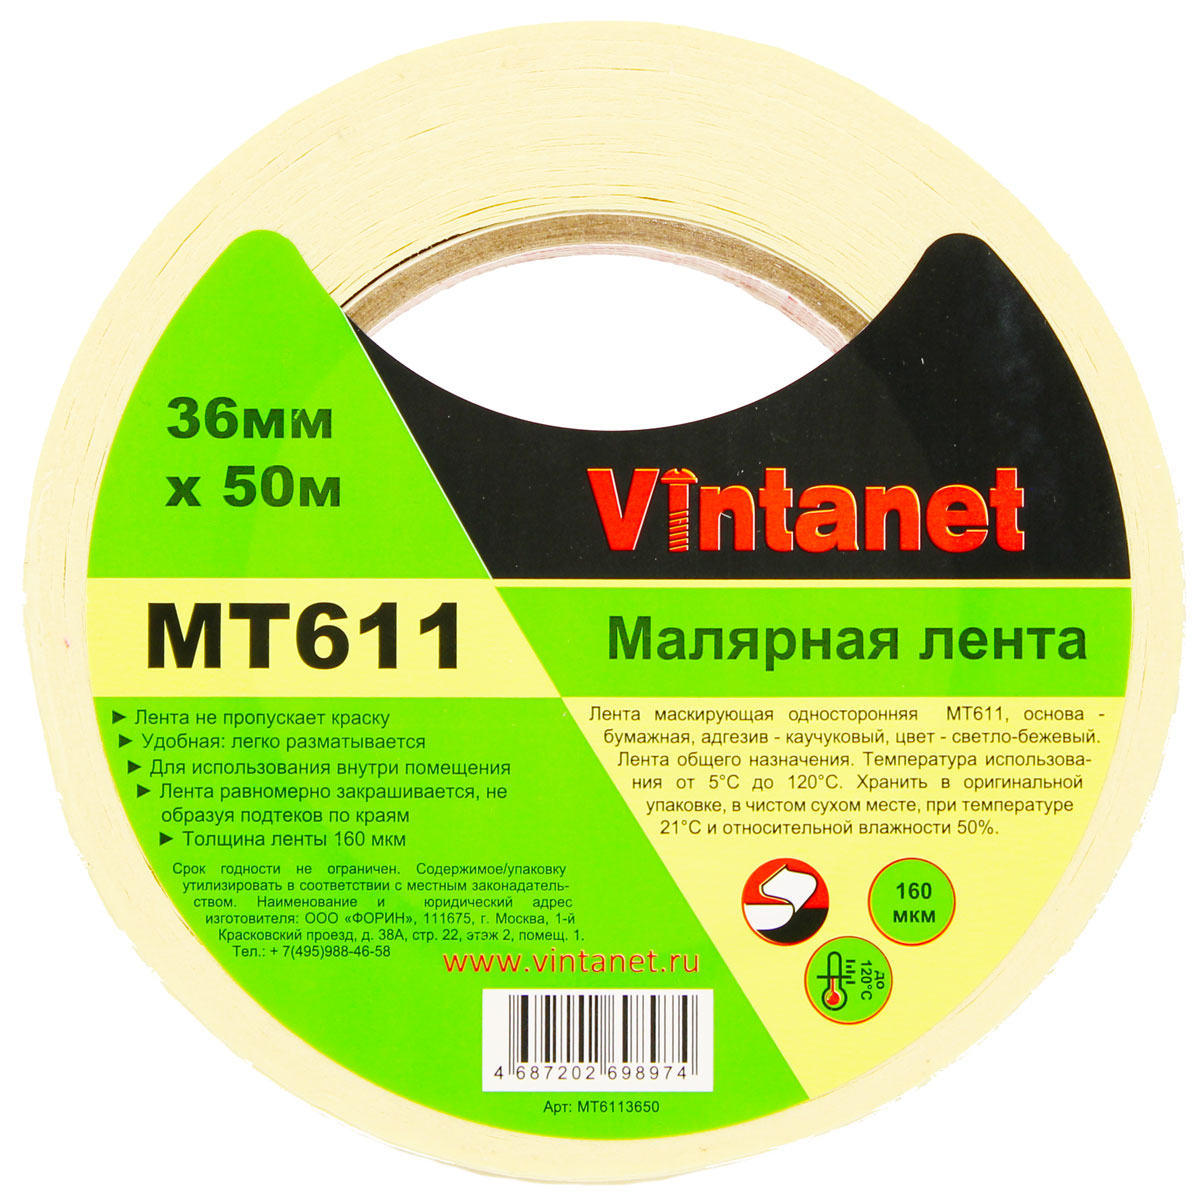 Лента малярная высокотемпературная Vintanet MT611, 120 С, 160 мкм, 36мм х 50м, MT6113650 малярная клейкая лента x glass